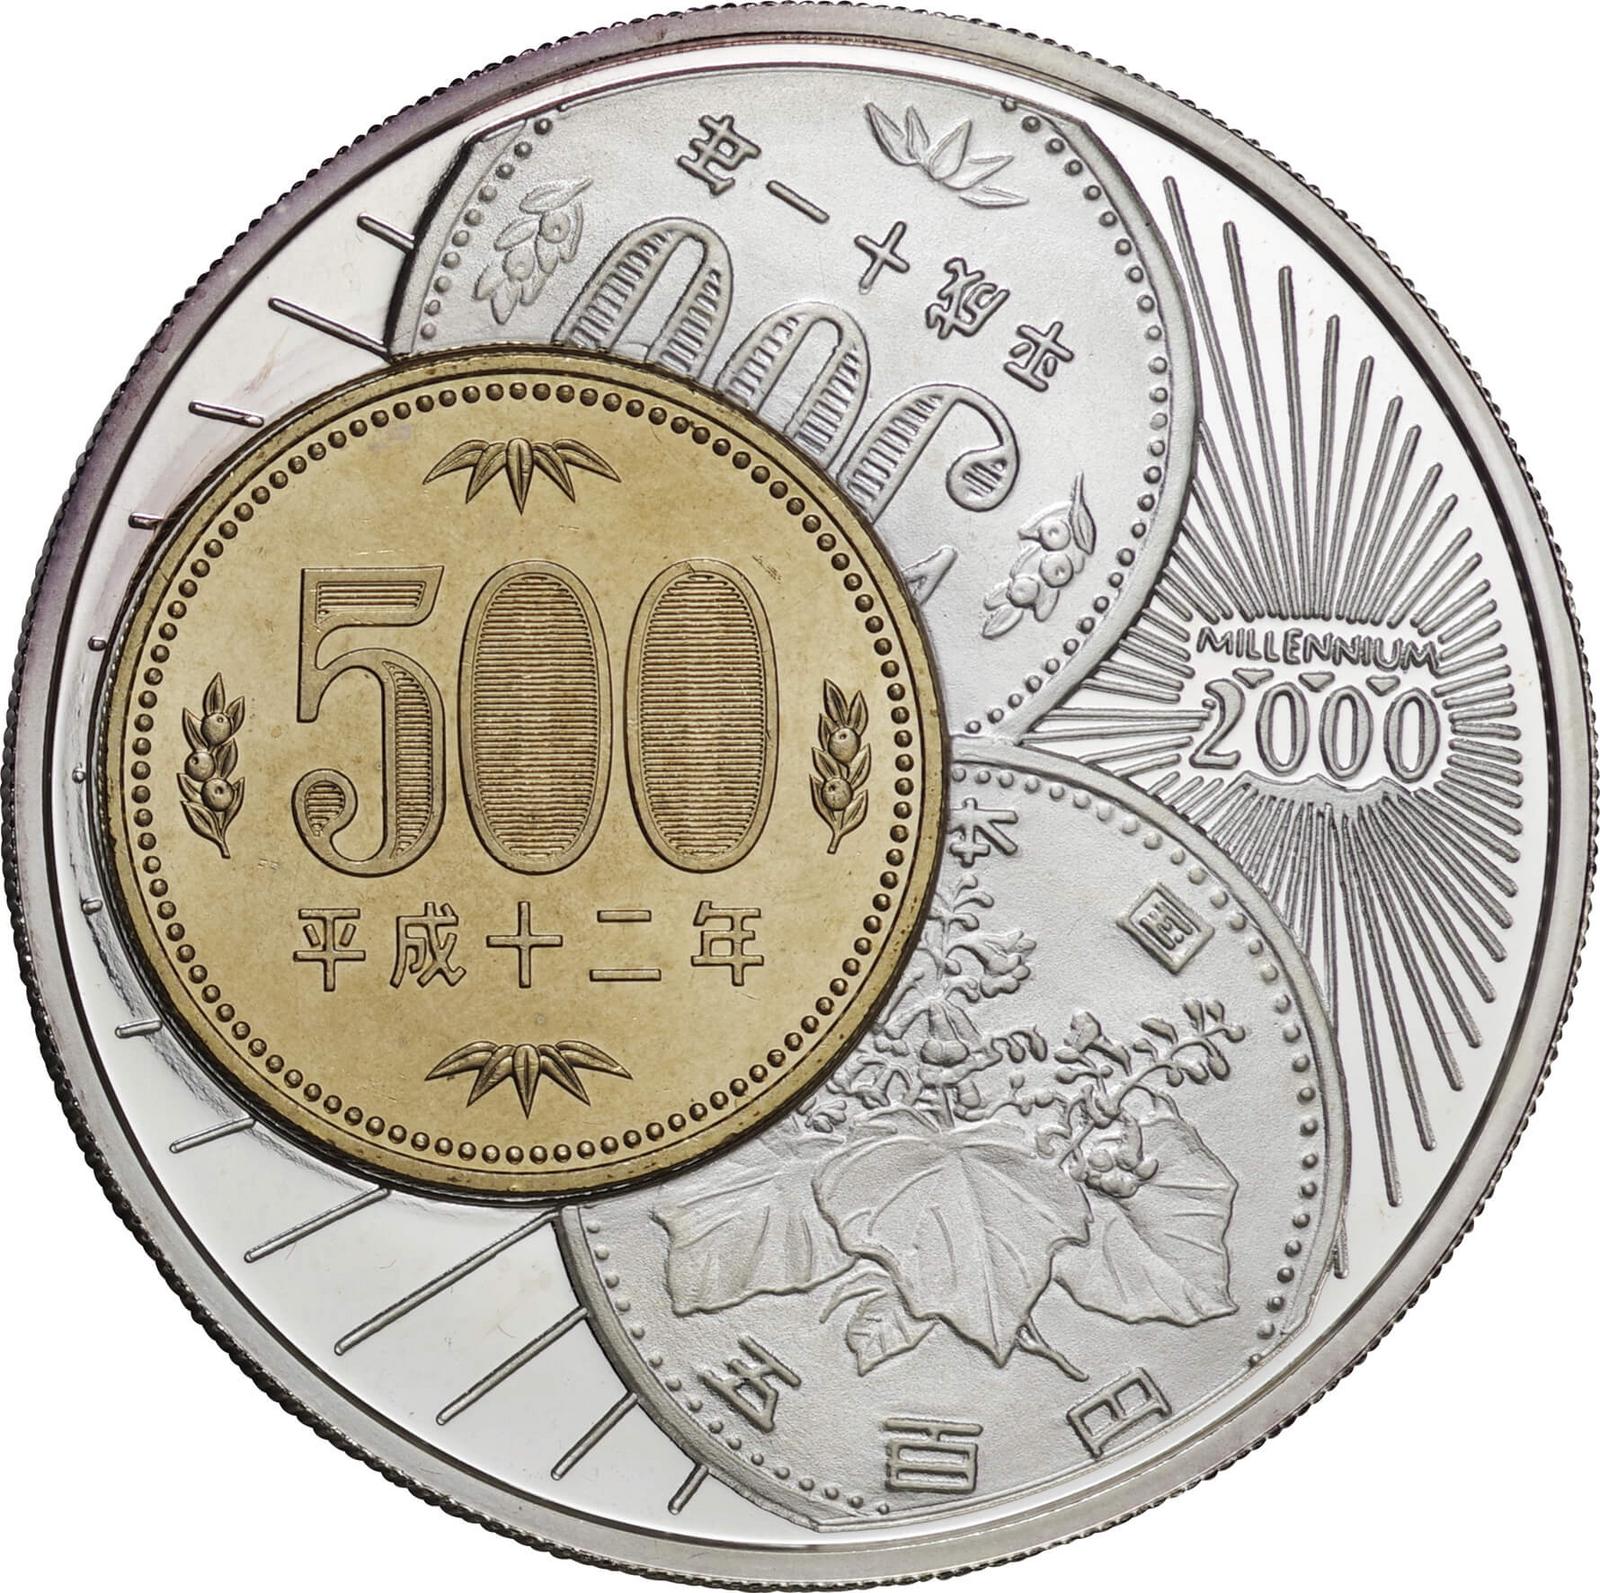 コンゴ-Congo. プルーフ. Proof. Silver. 20フラン(Francs). 新500円 